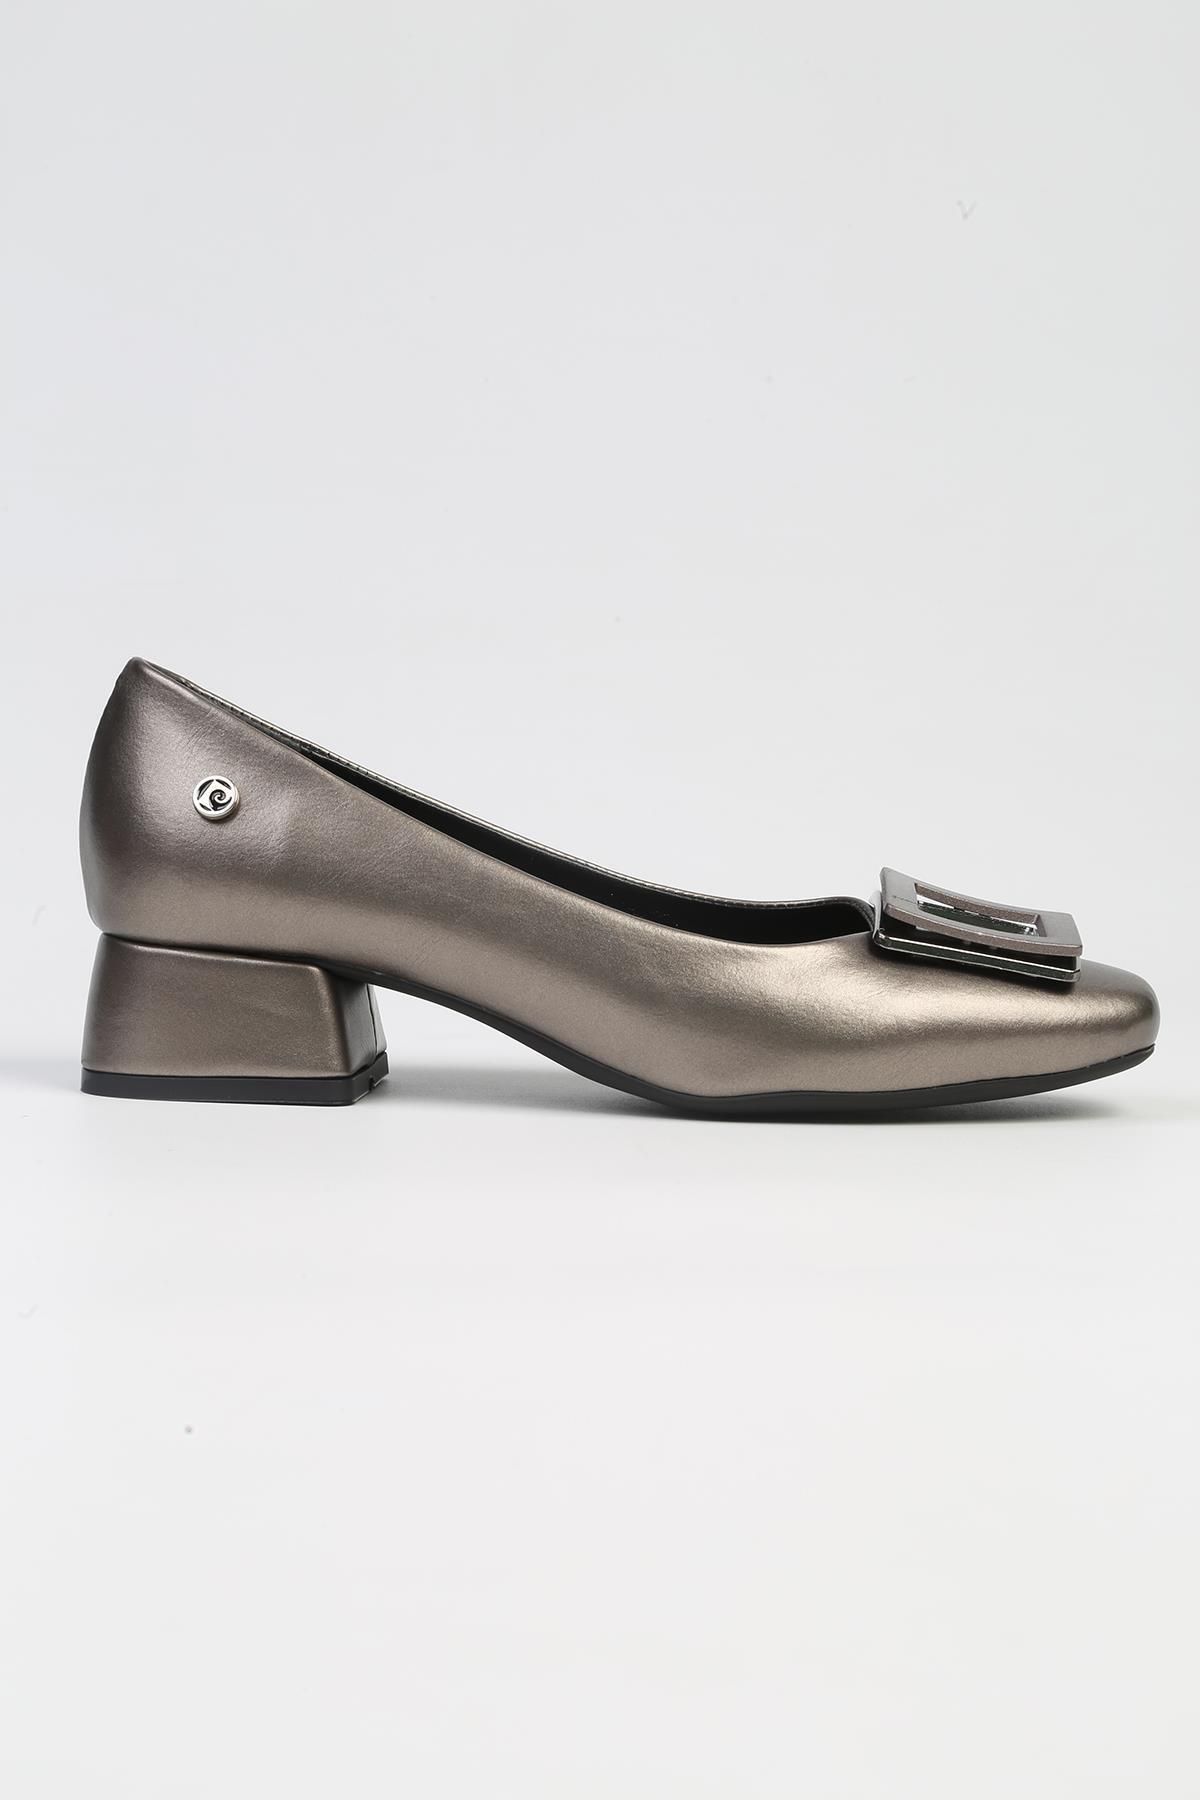 Pierre Cardin ® | PC-53100- 3592 Platin Cilt-Kadın Kısa Topuklu Ayakkabı